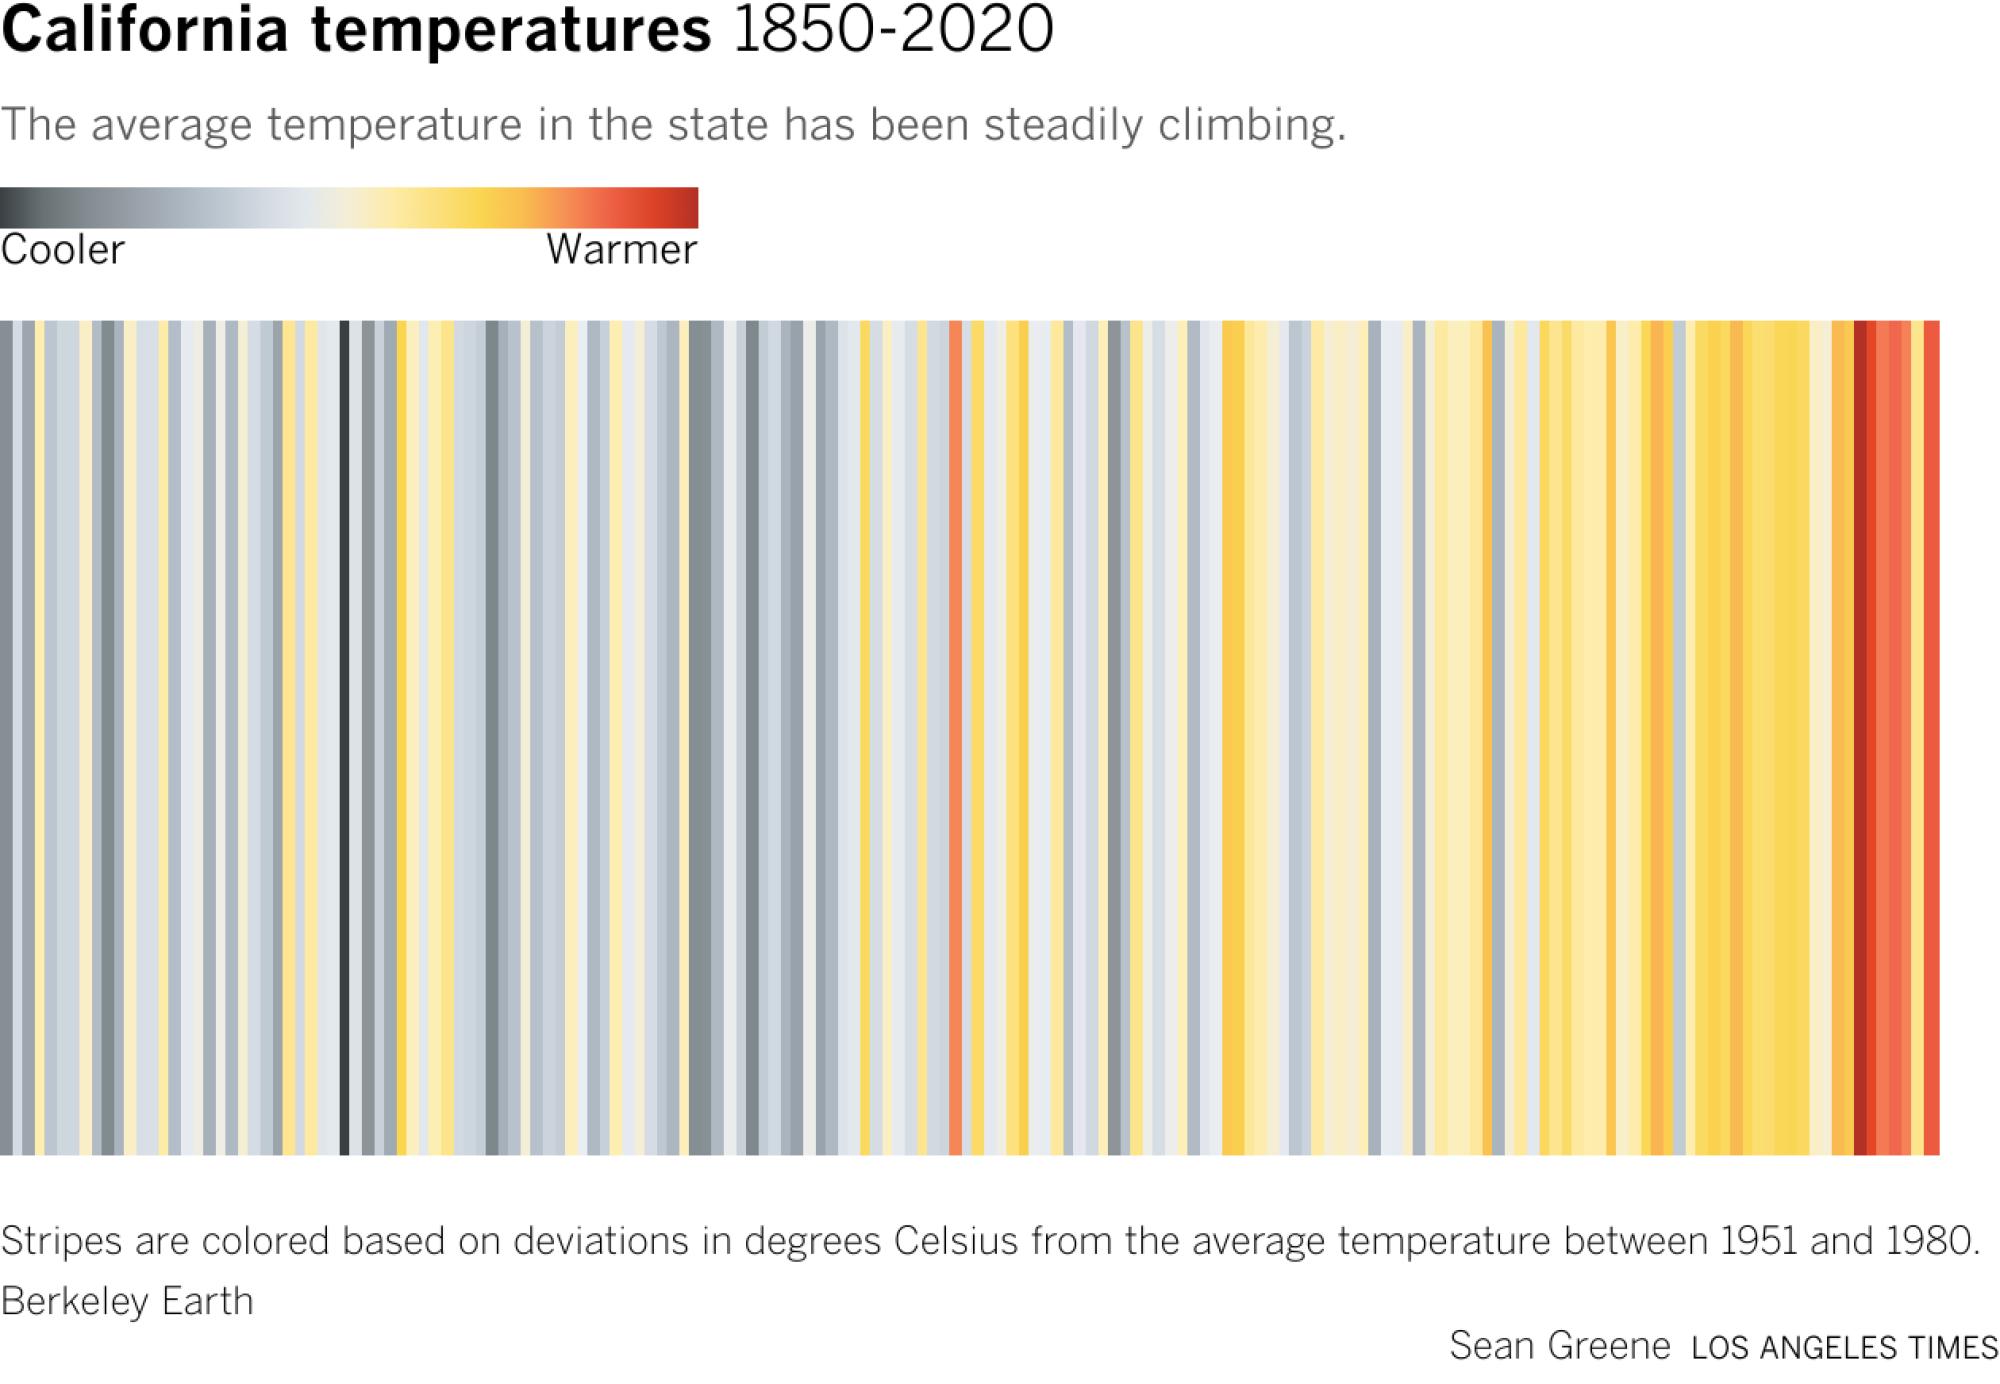 气候条纹可视化显示过去 10 年间气温急剧上升。